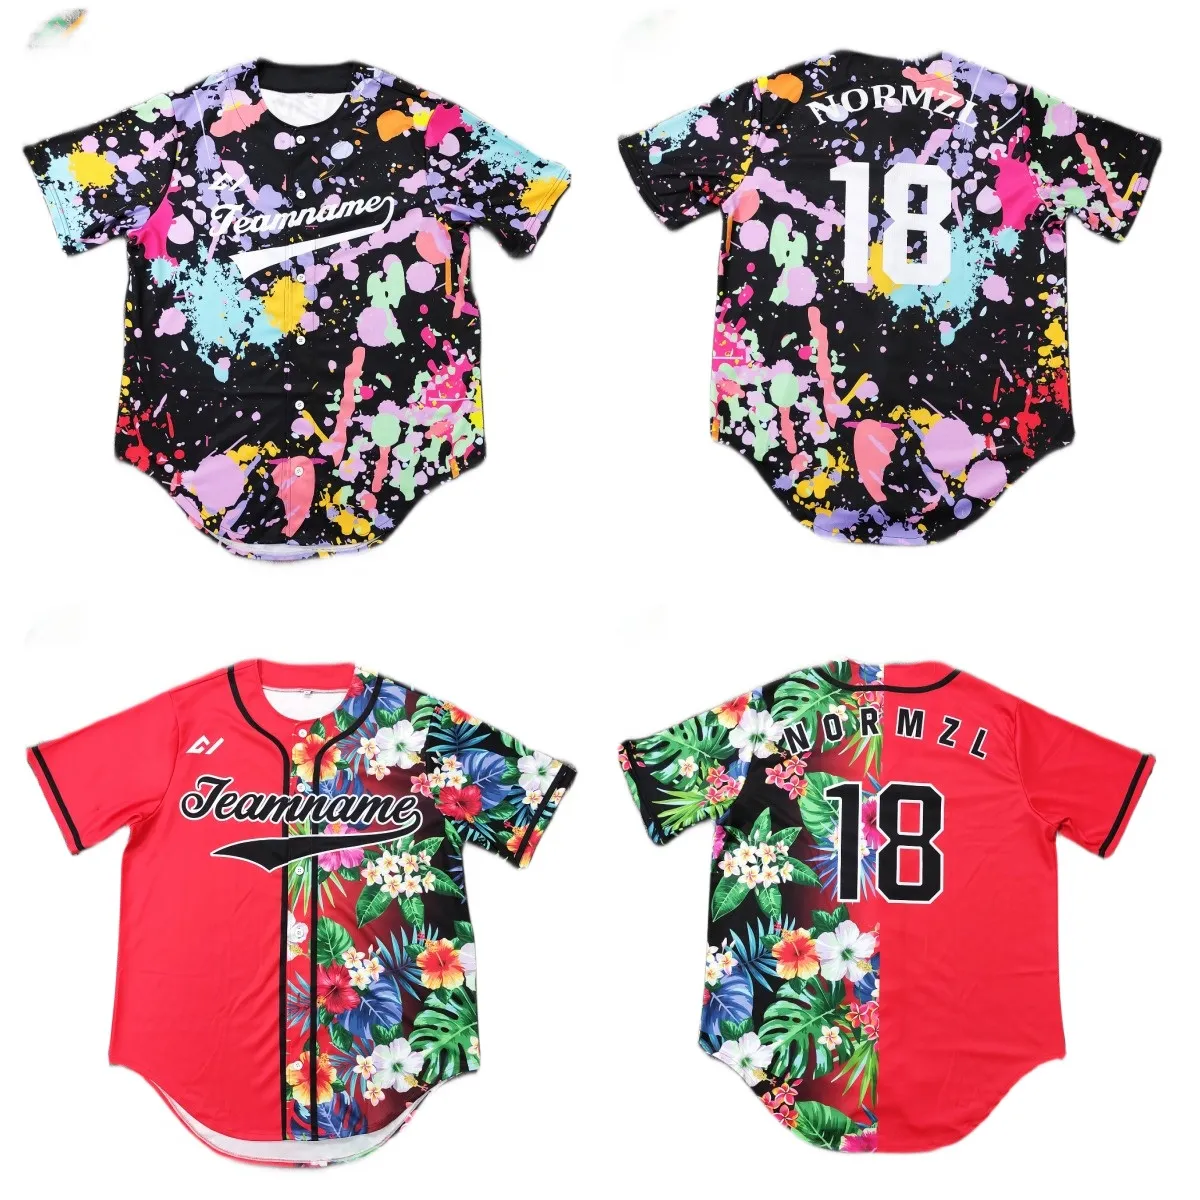 Gençlik boy özel örgü kamuflaj siyah beyzbol tişörtü ceket ve softbol giyim spor forması spor mayo